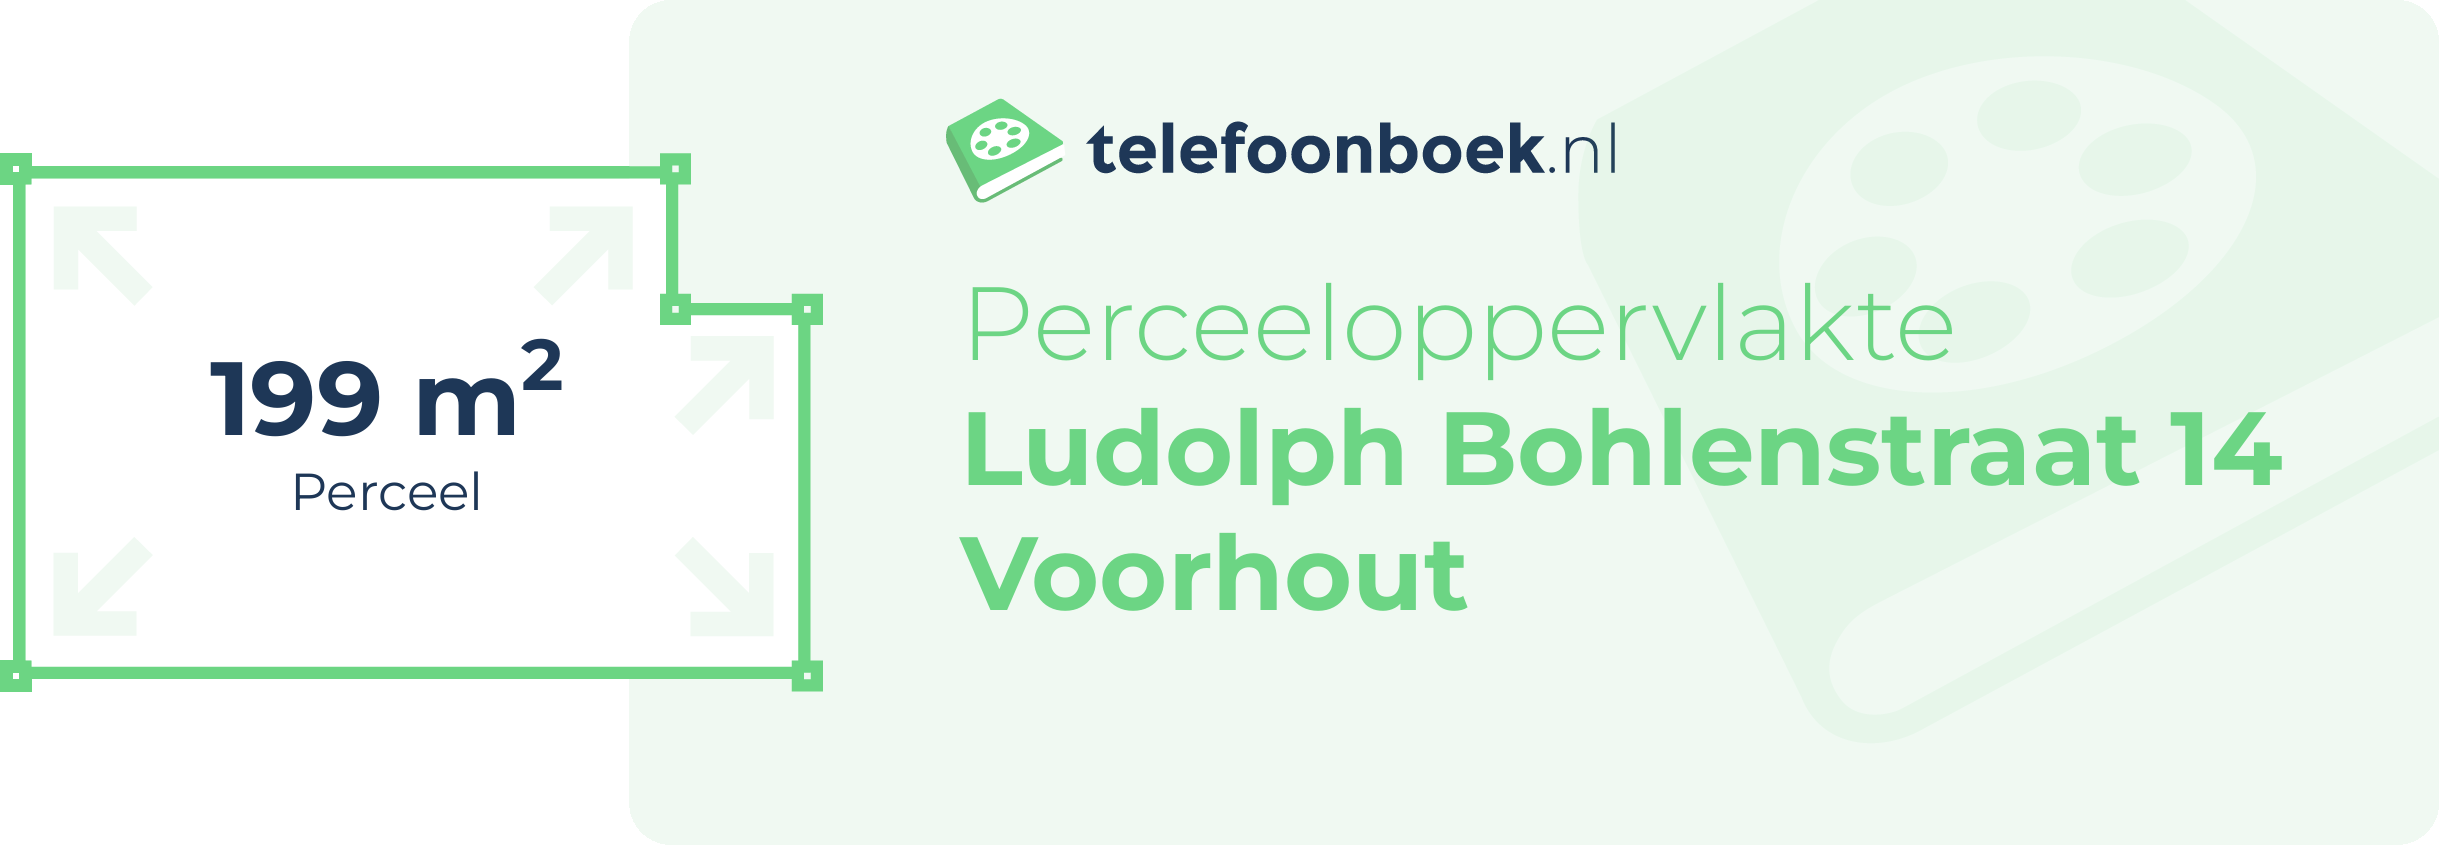 Perceeloppervlakte Ludolph Bohlenstraat 14 Voorhout